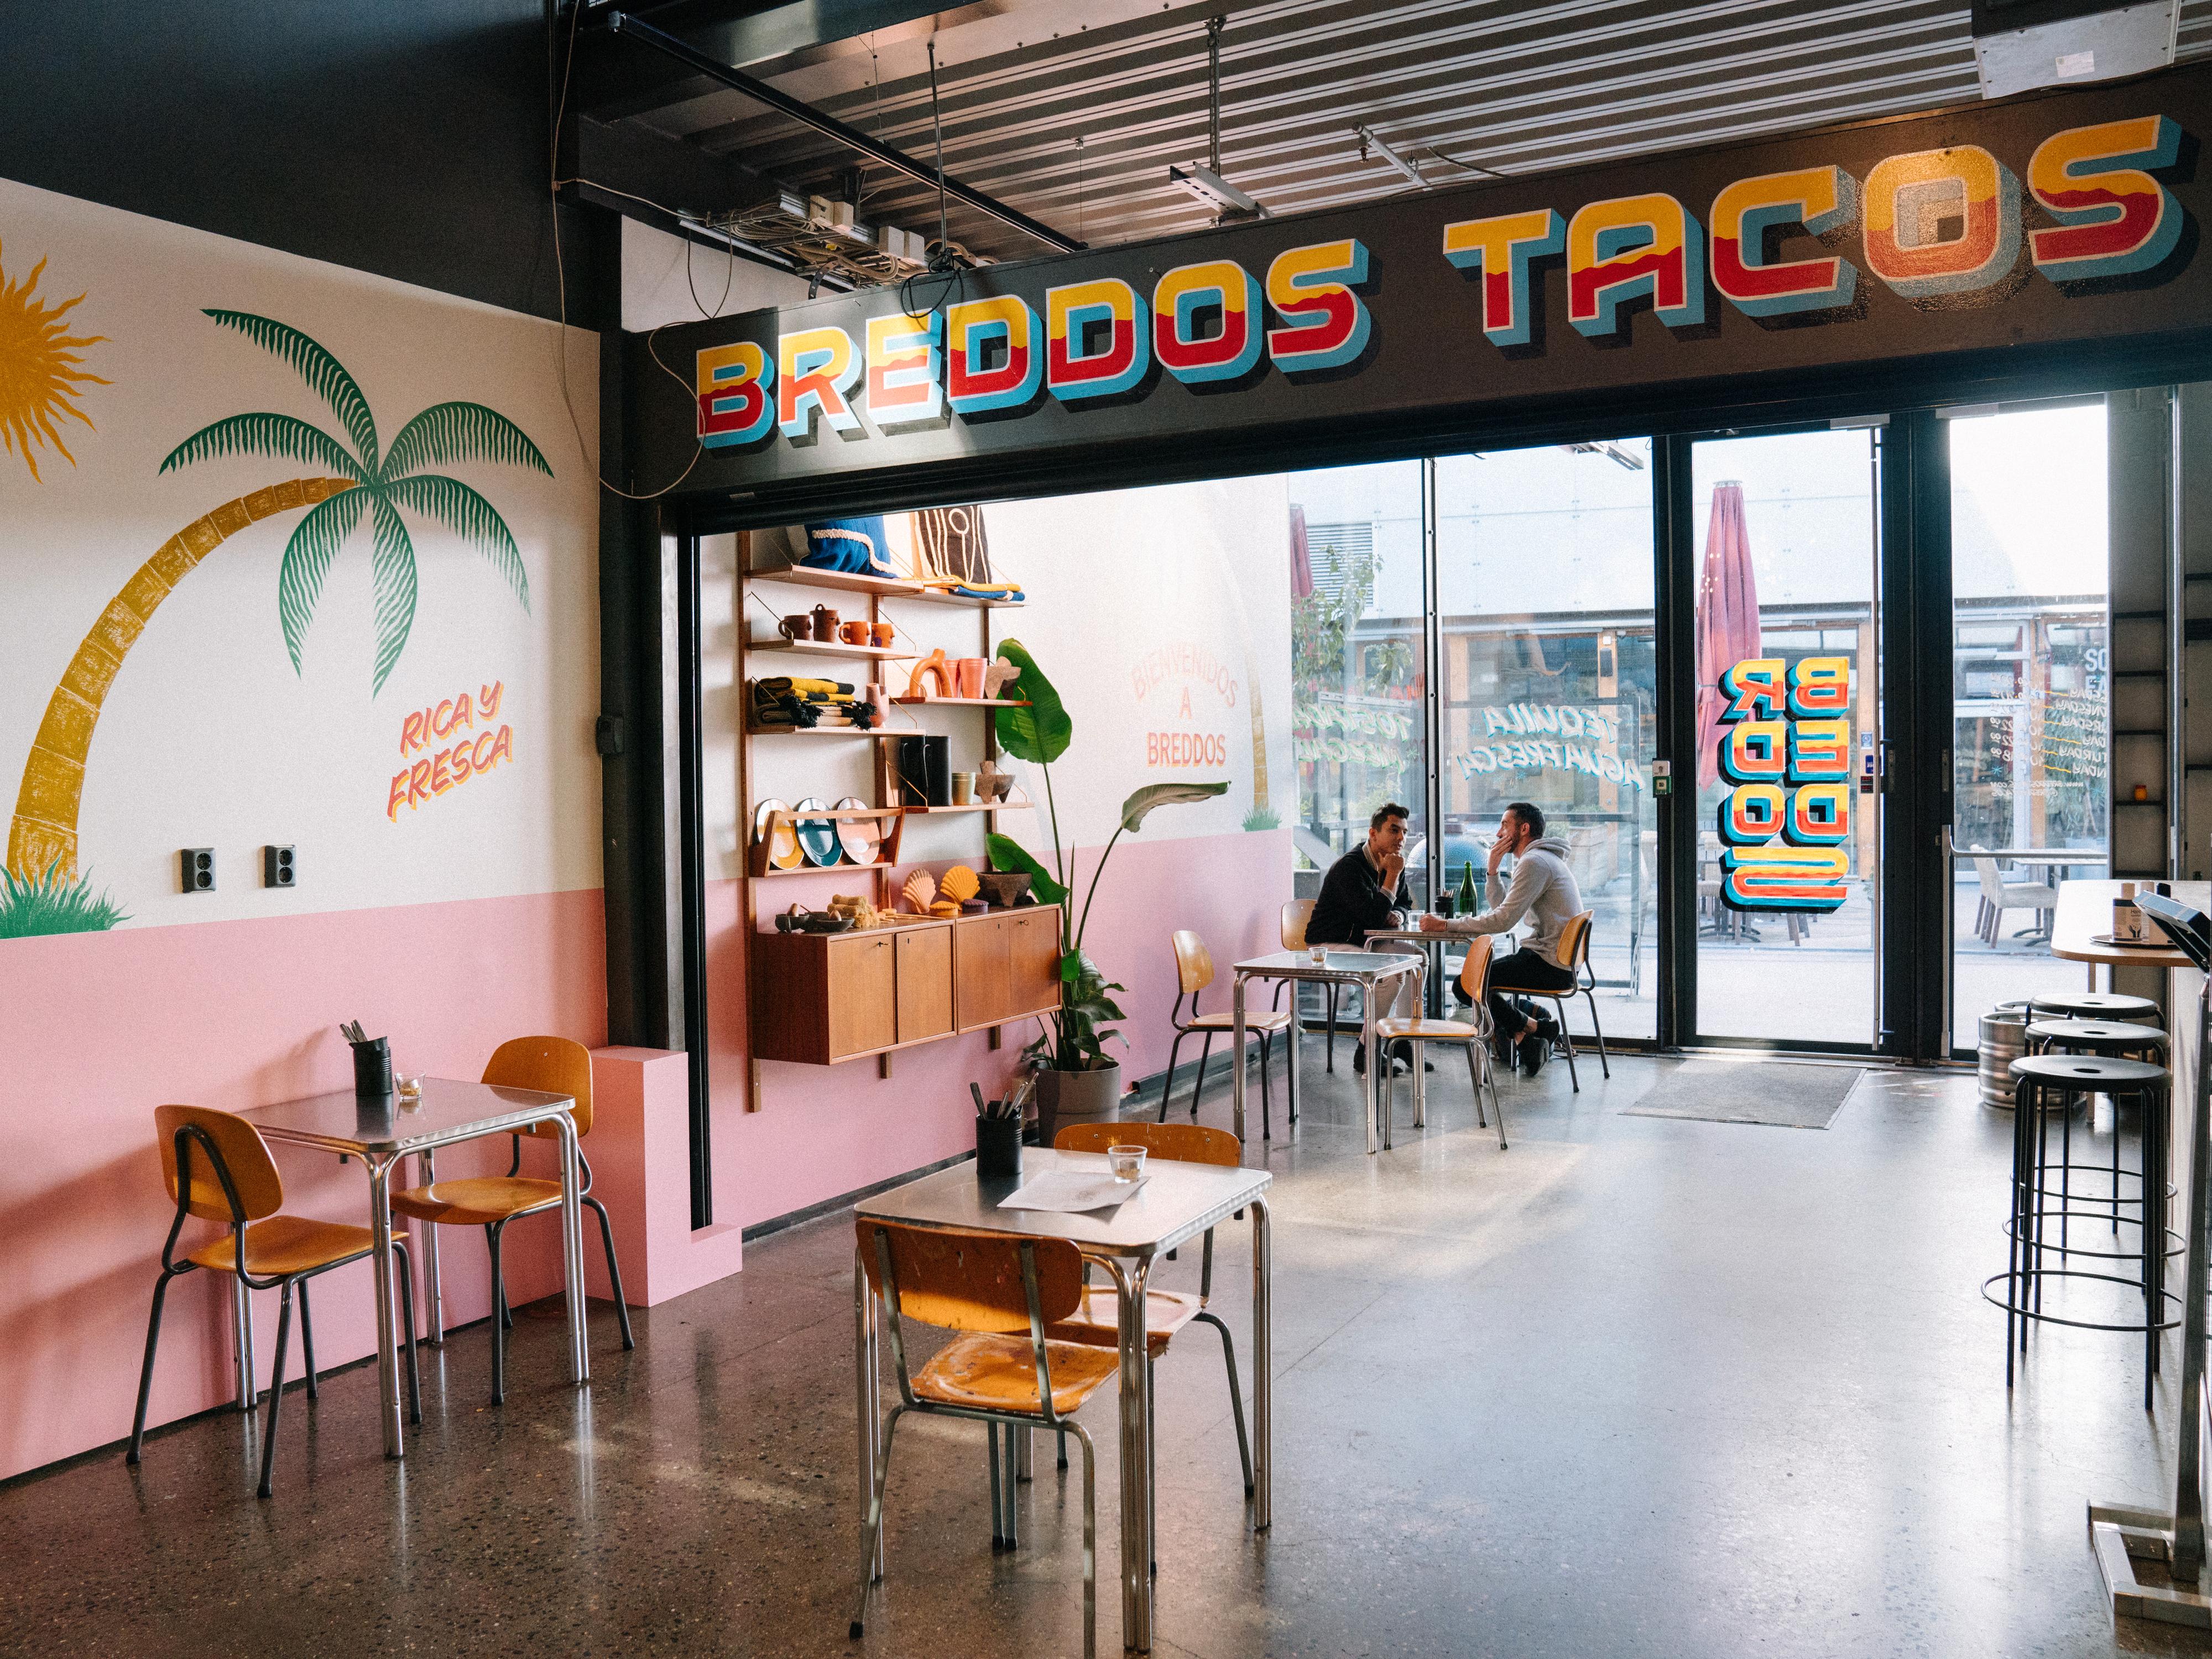 Restaurantanmeldelse av Breddos Tacos: En åpenbaring av en tacorestaurant